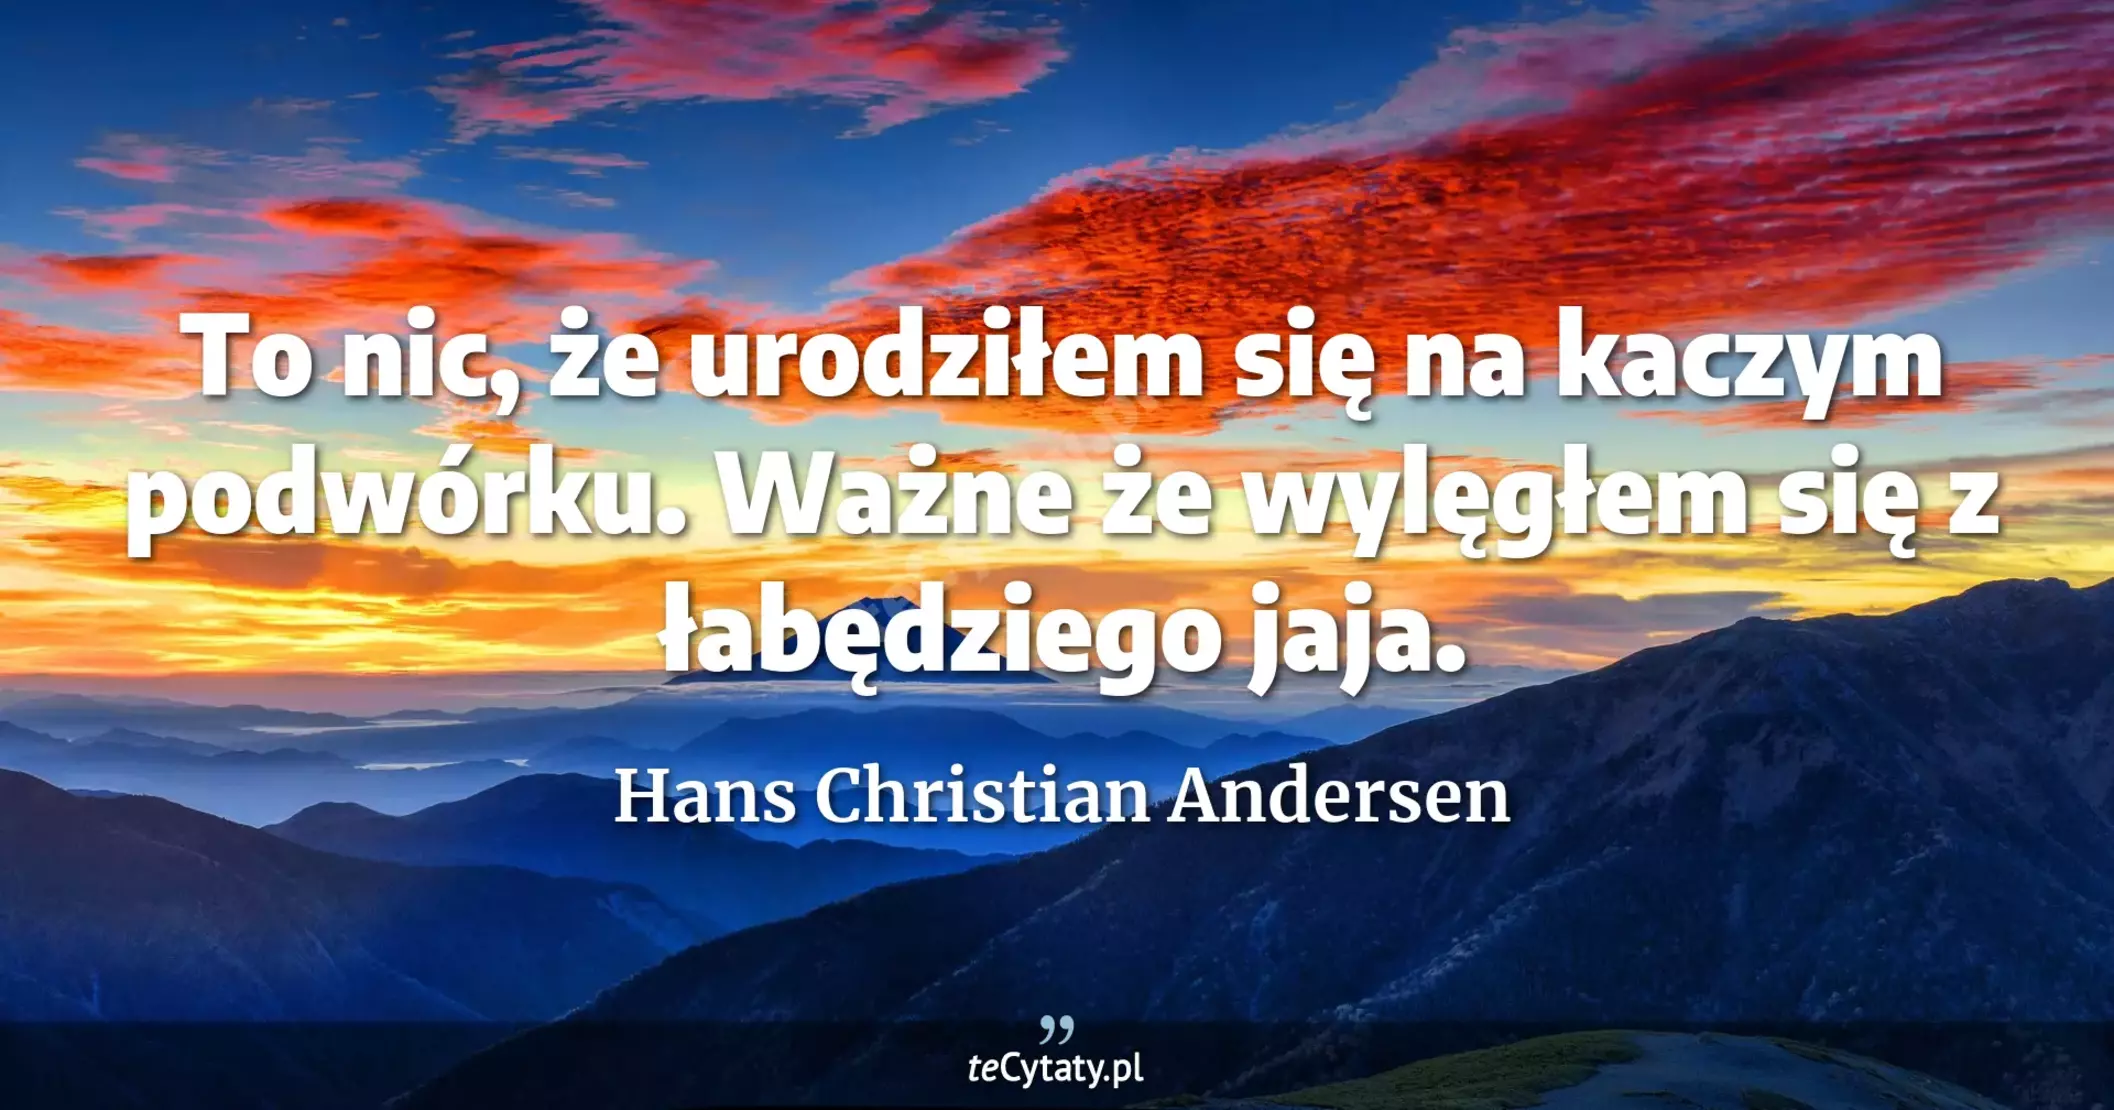 To nic, że urodziłem się na kaczym podwórku. Ważne że wylęgłem się z łabędziego jaja. - Hans Christian Andersen